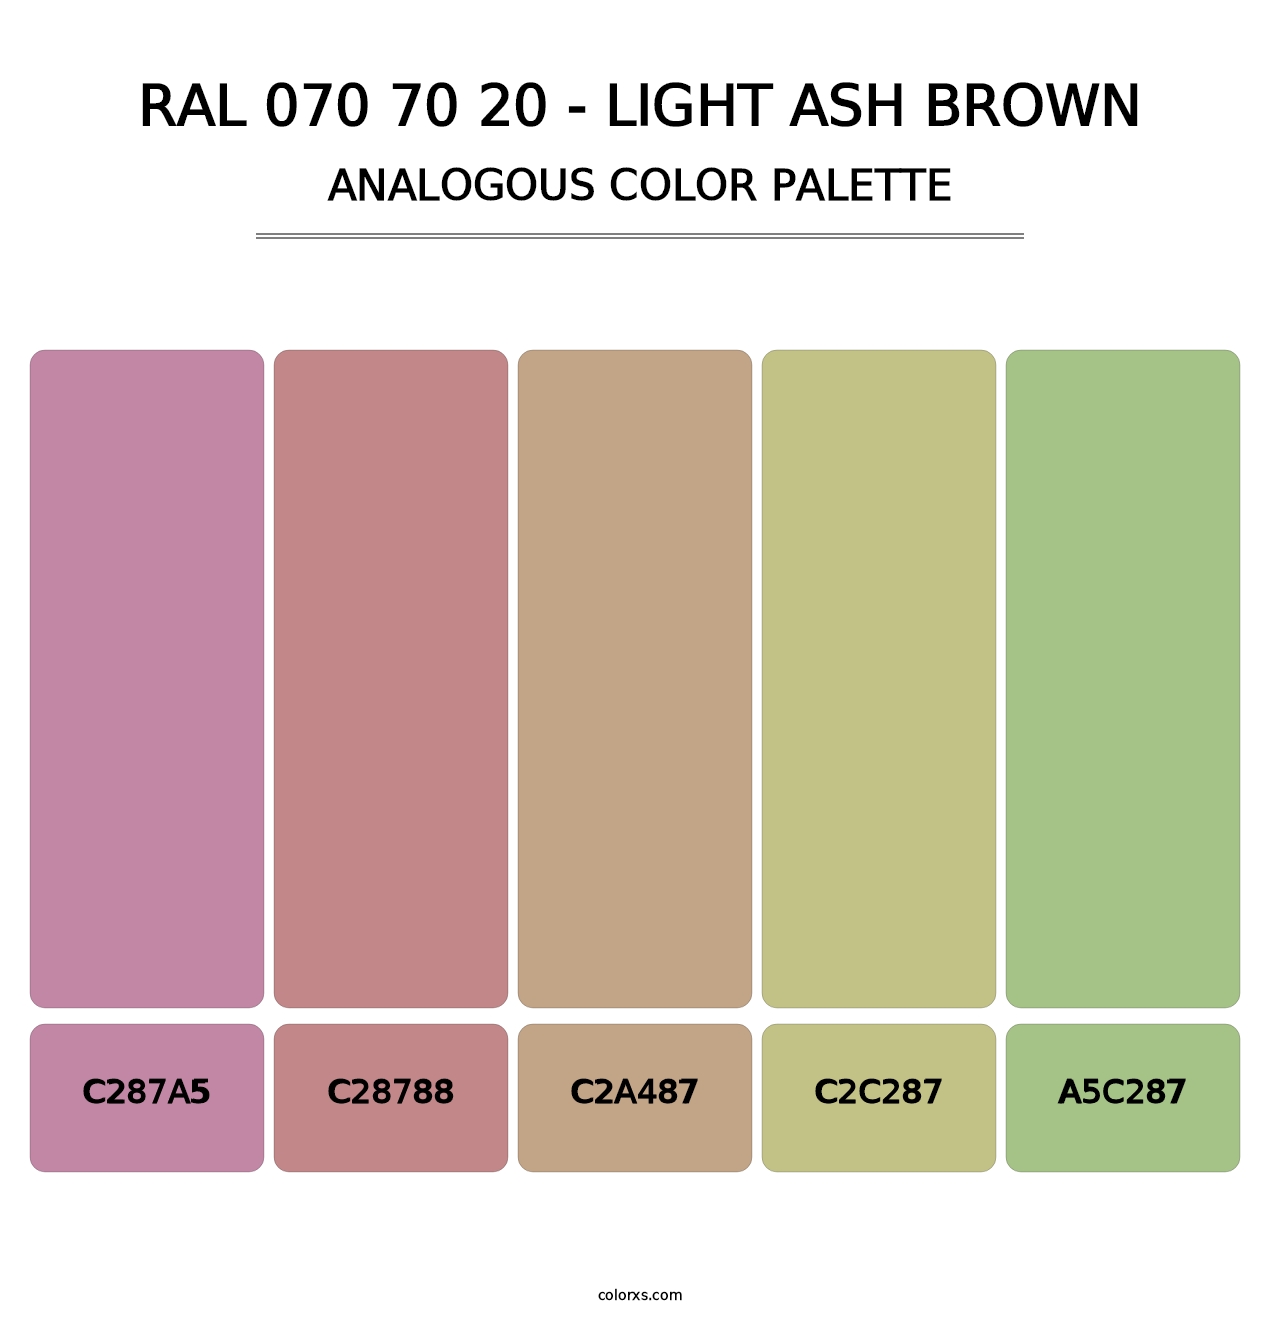 RAL 070 70 20 - Light Ash Brown - Analogous Color Palette